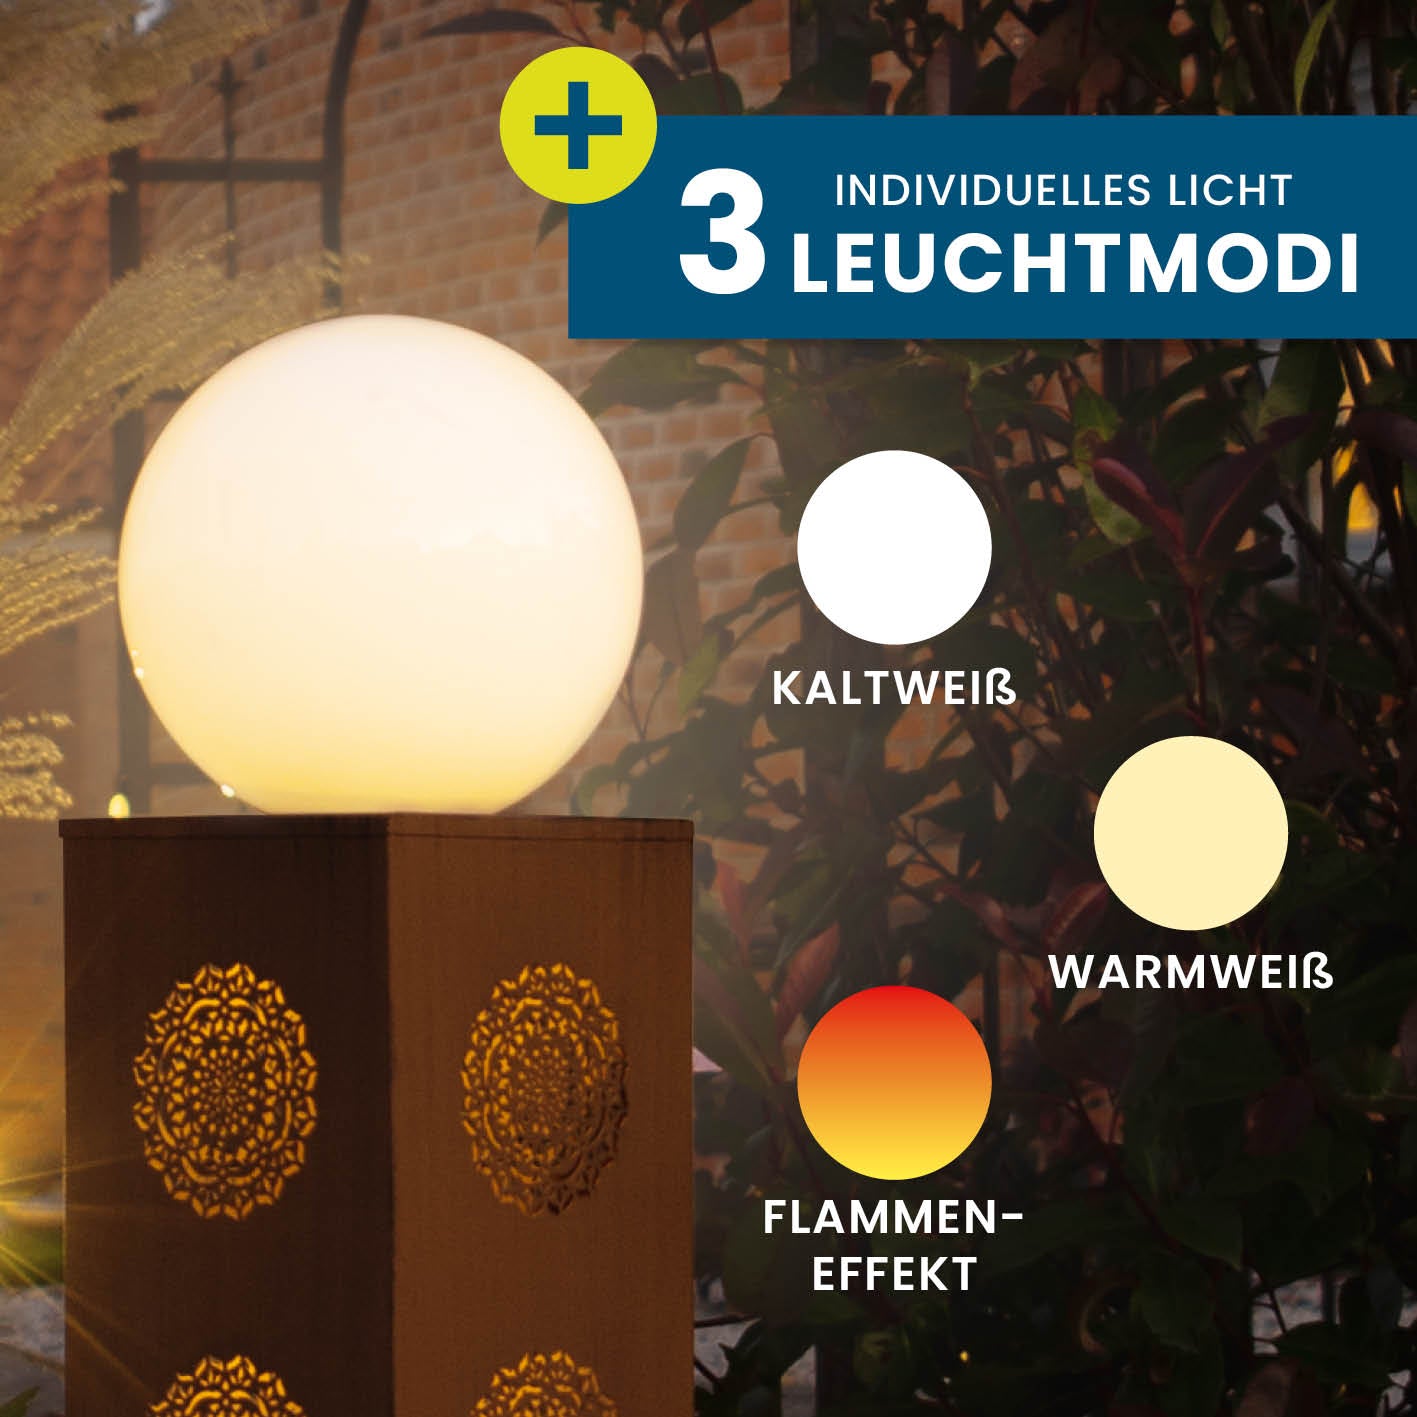 LED-Dekosäule "Mandala" in Rost-Optik - 21 x 21 x 84 cm